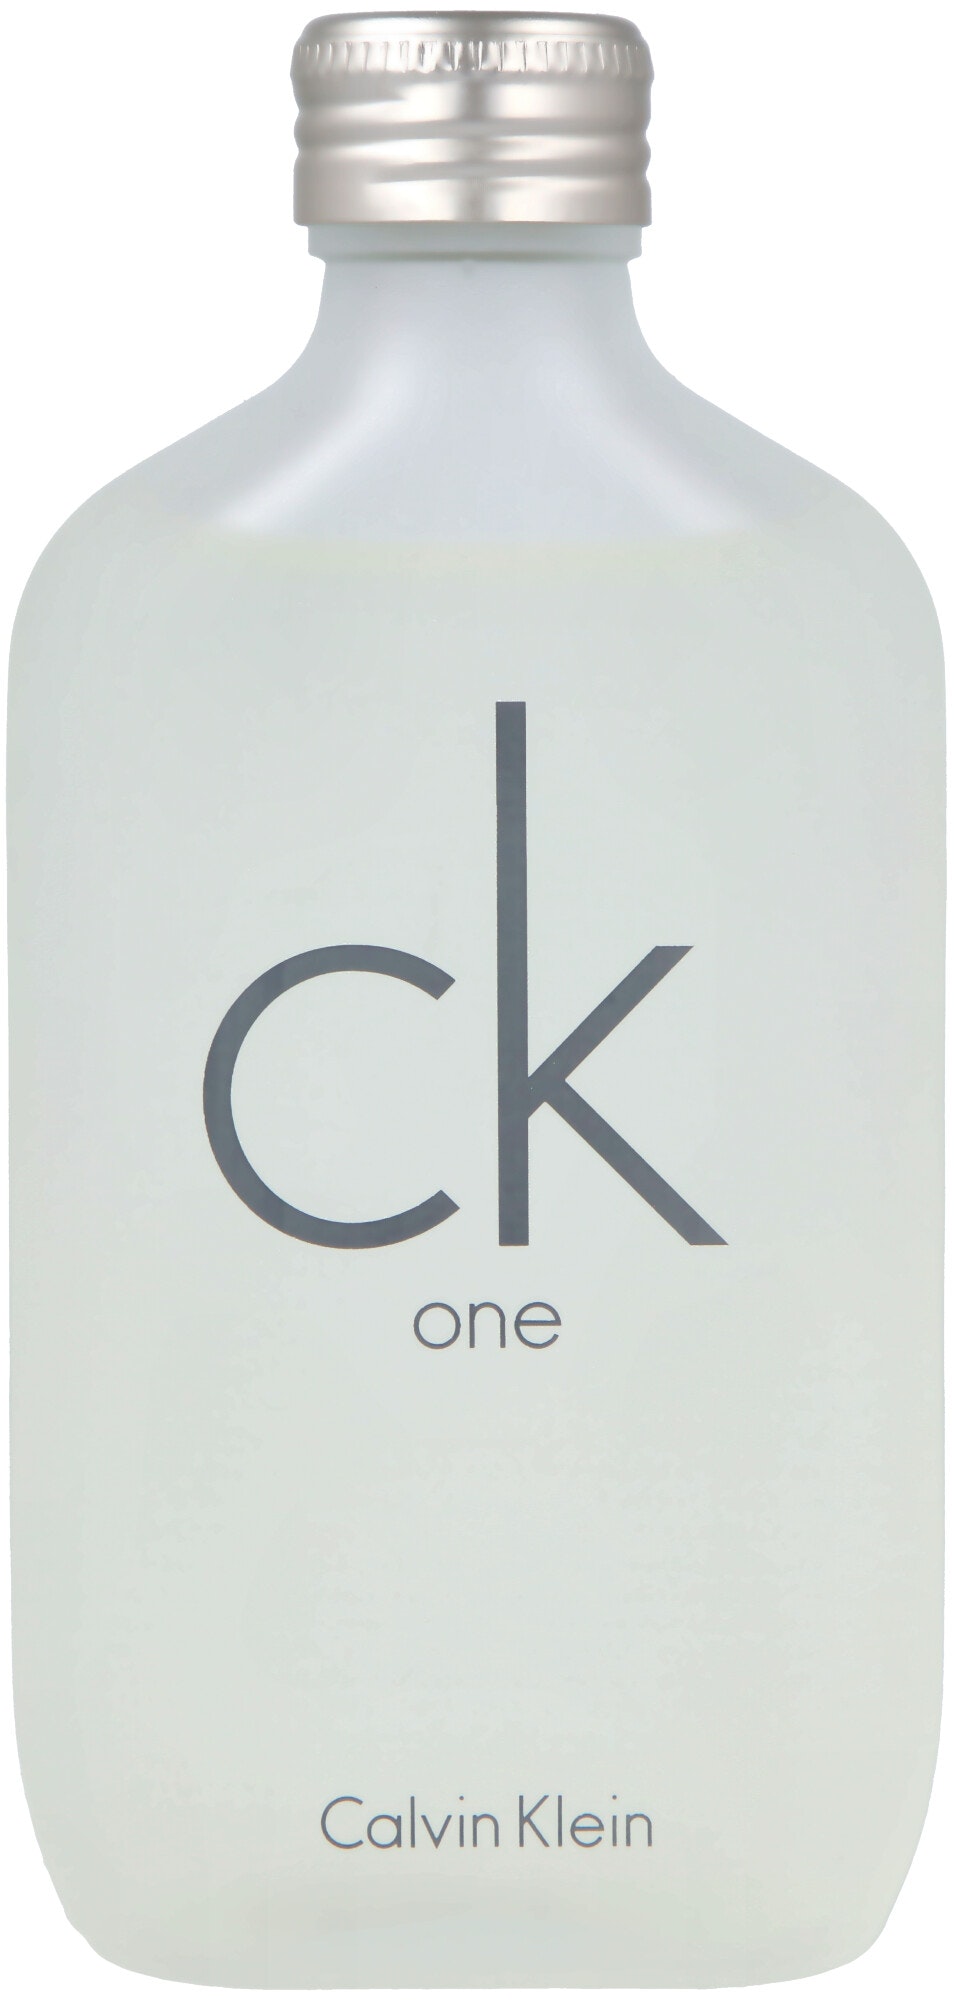 Calvin Klein CK One Eau De Toilette